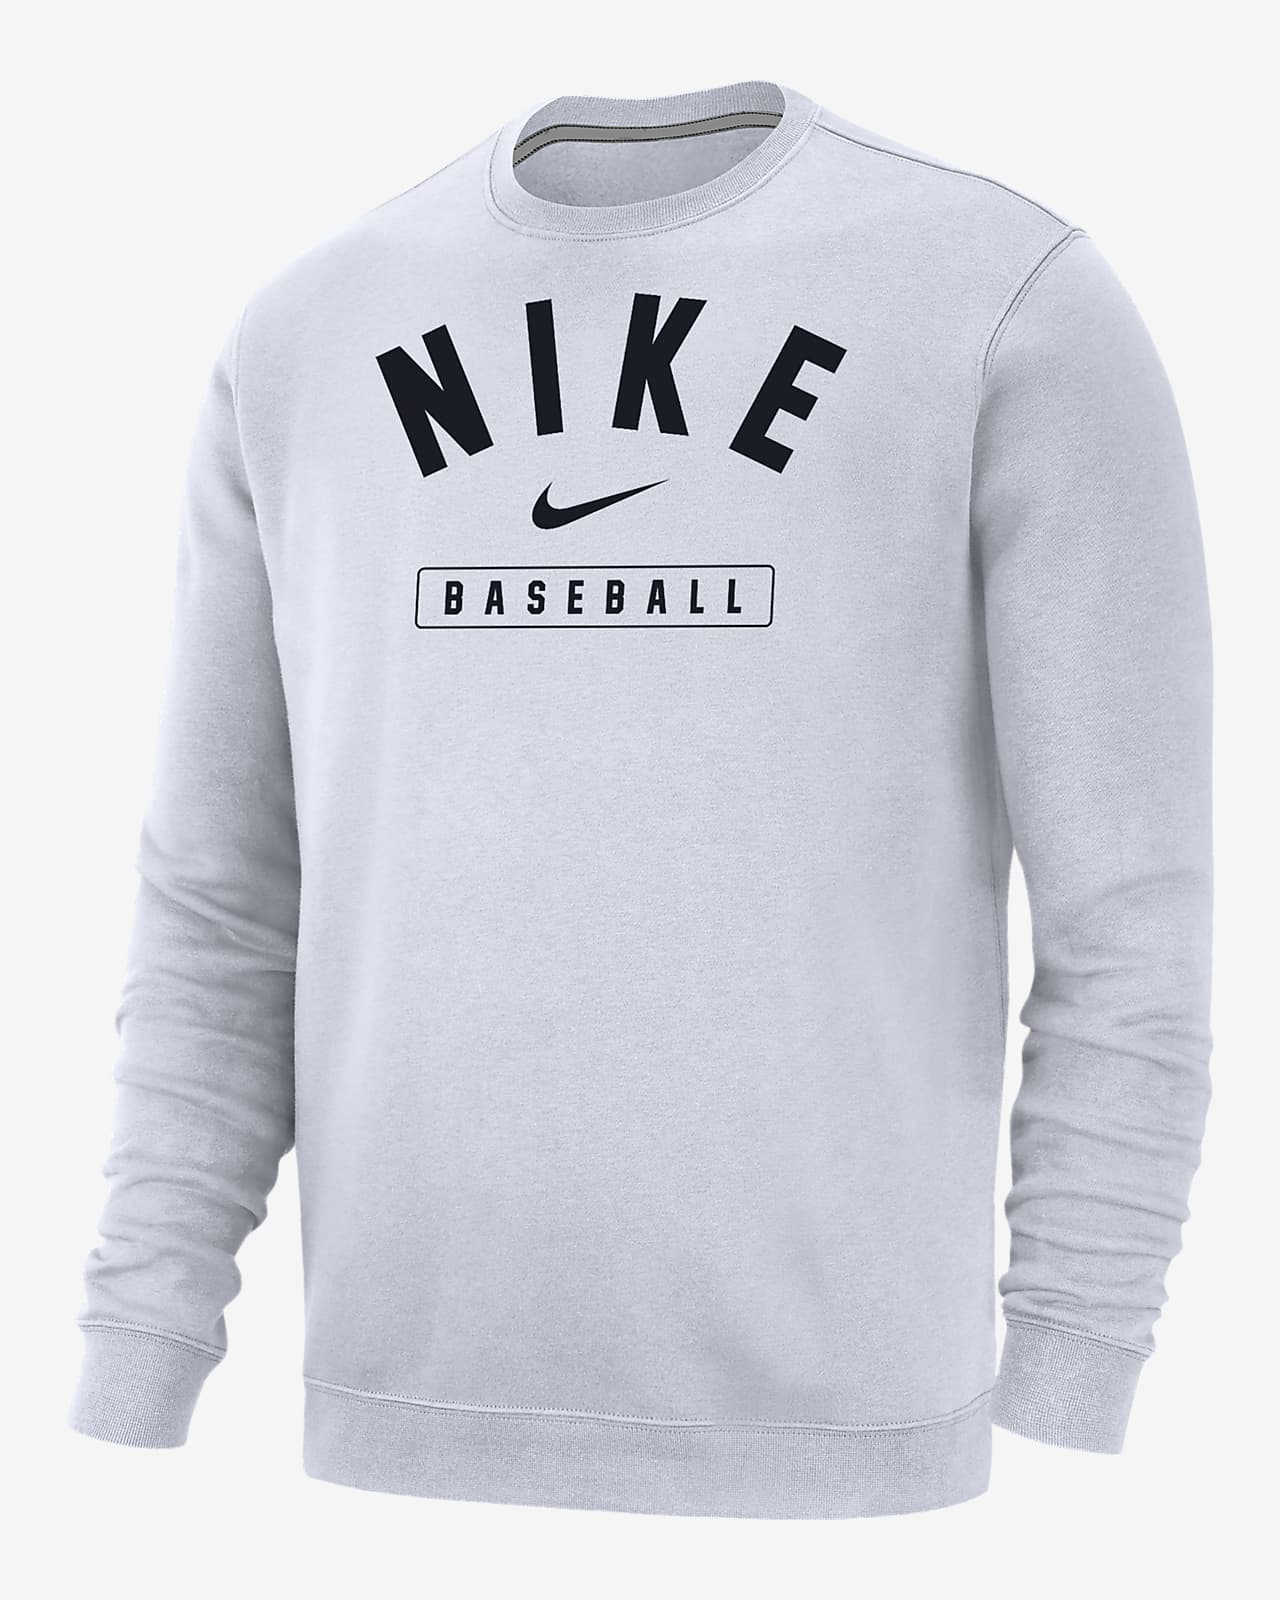 Nike Baseball Men's Crew-Neck Sweatshirt